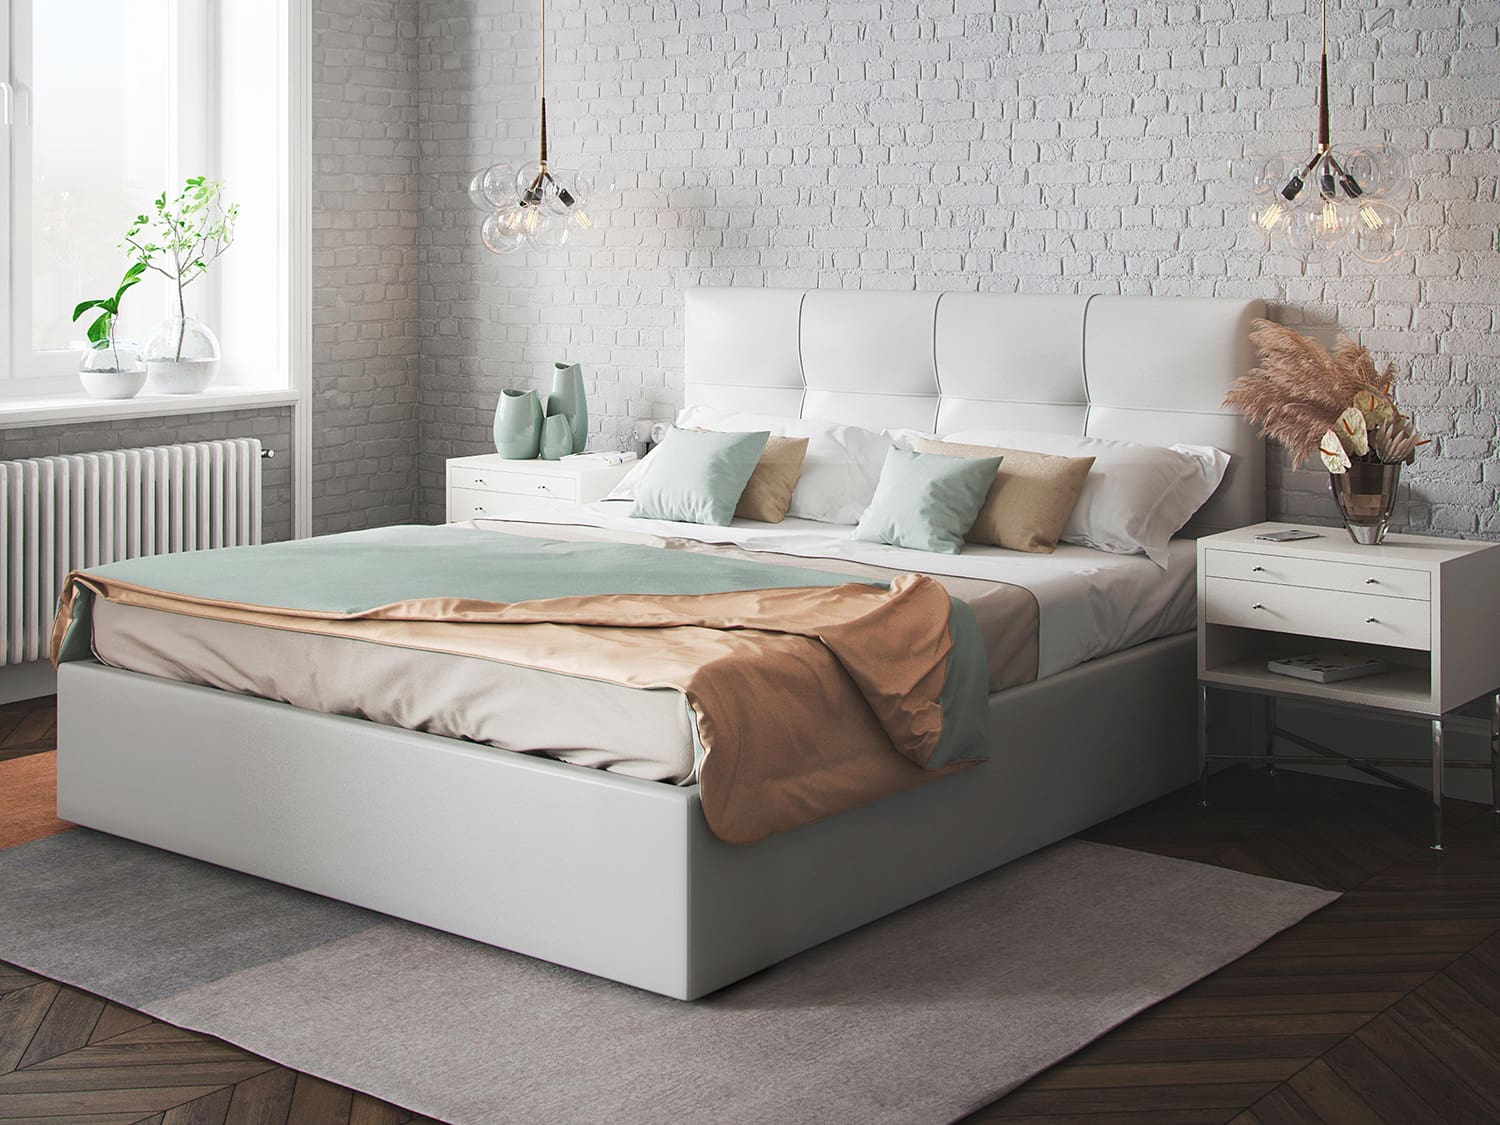 Кровать Monte - кровать со съемными чехлами на царгах